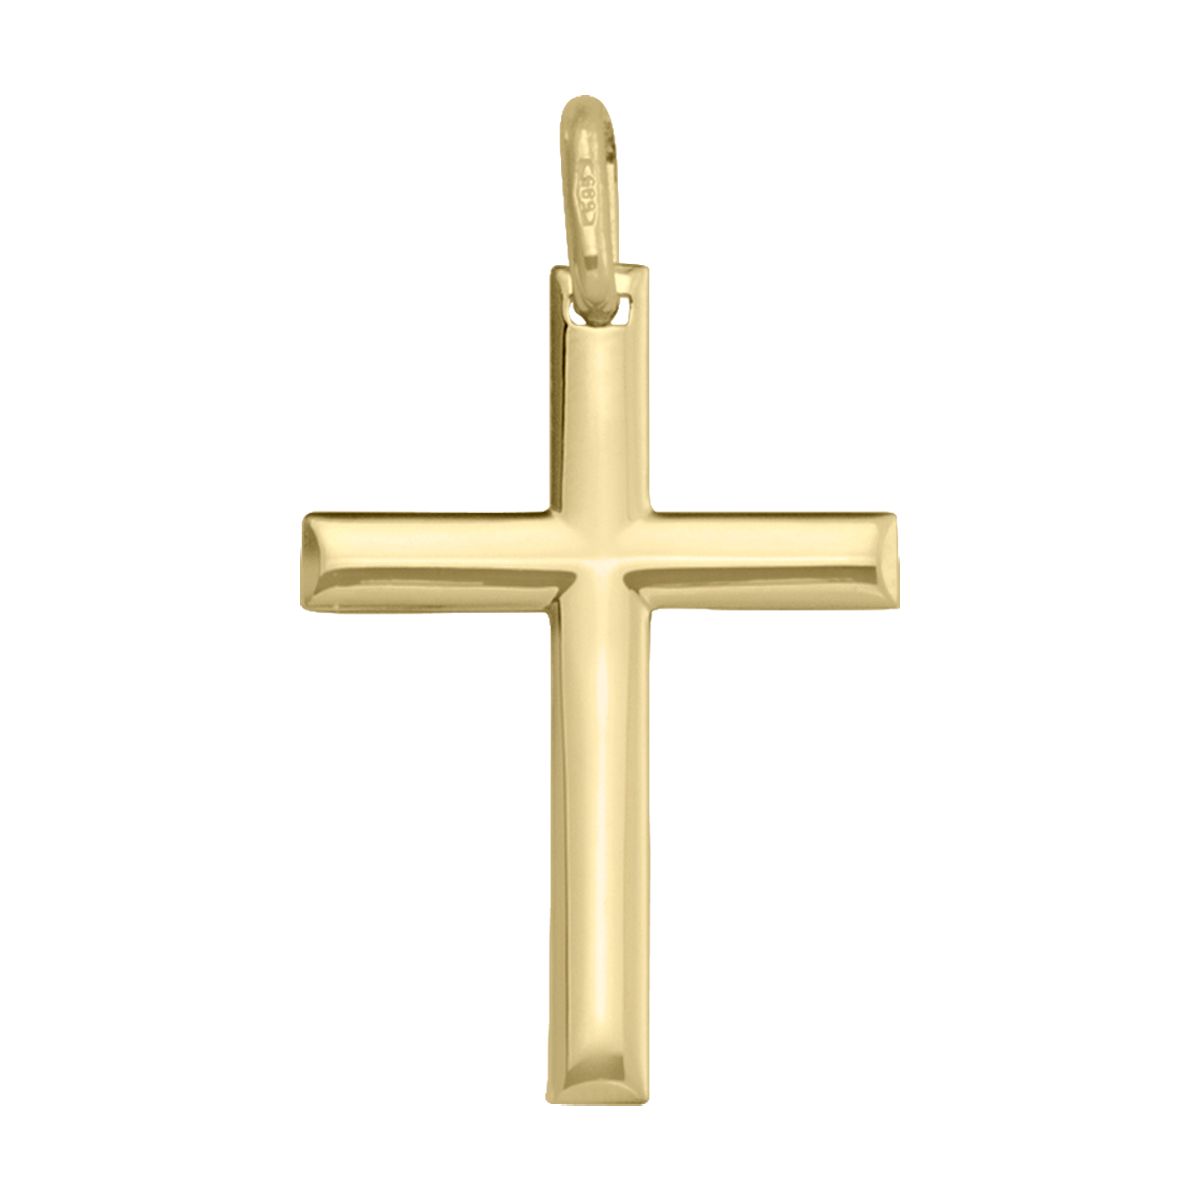 X0416, Gold Cross, Plain Design